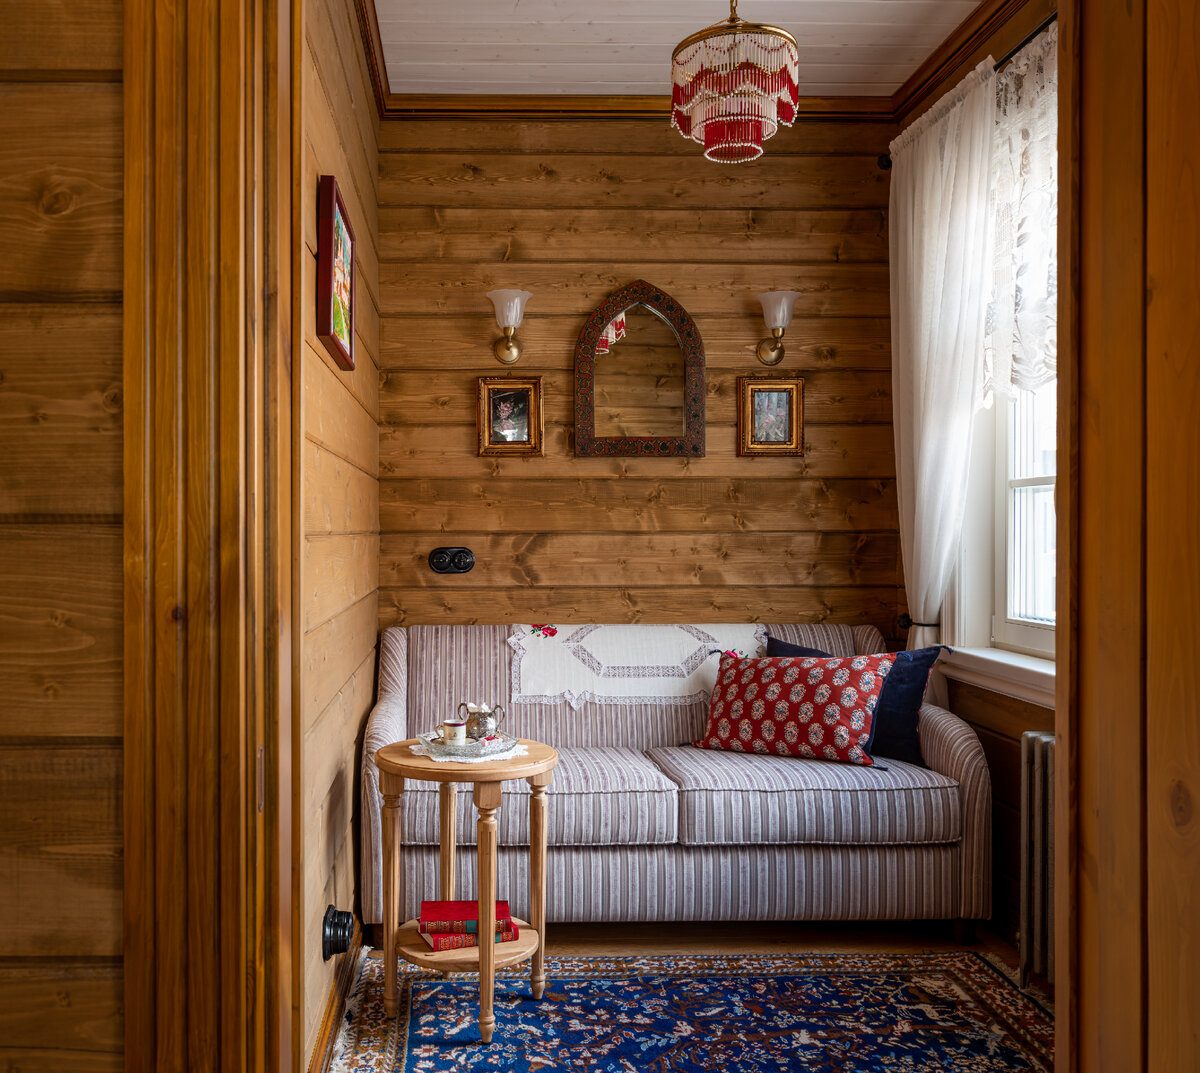 Гостевой дом в Суздале с печкой и старинной мебелью Елена, дизайнер, кровать, говорит, буфет, только, печкой, Dream, историей, решила, обстановку, больше, черный, хозяйка, несколько, заказчица, частично, чтобы, плиткой, Kerama